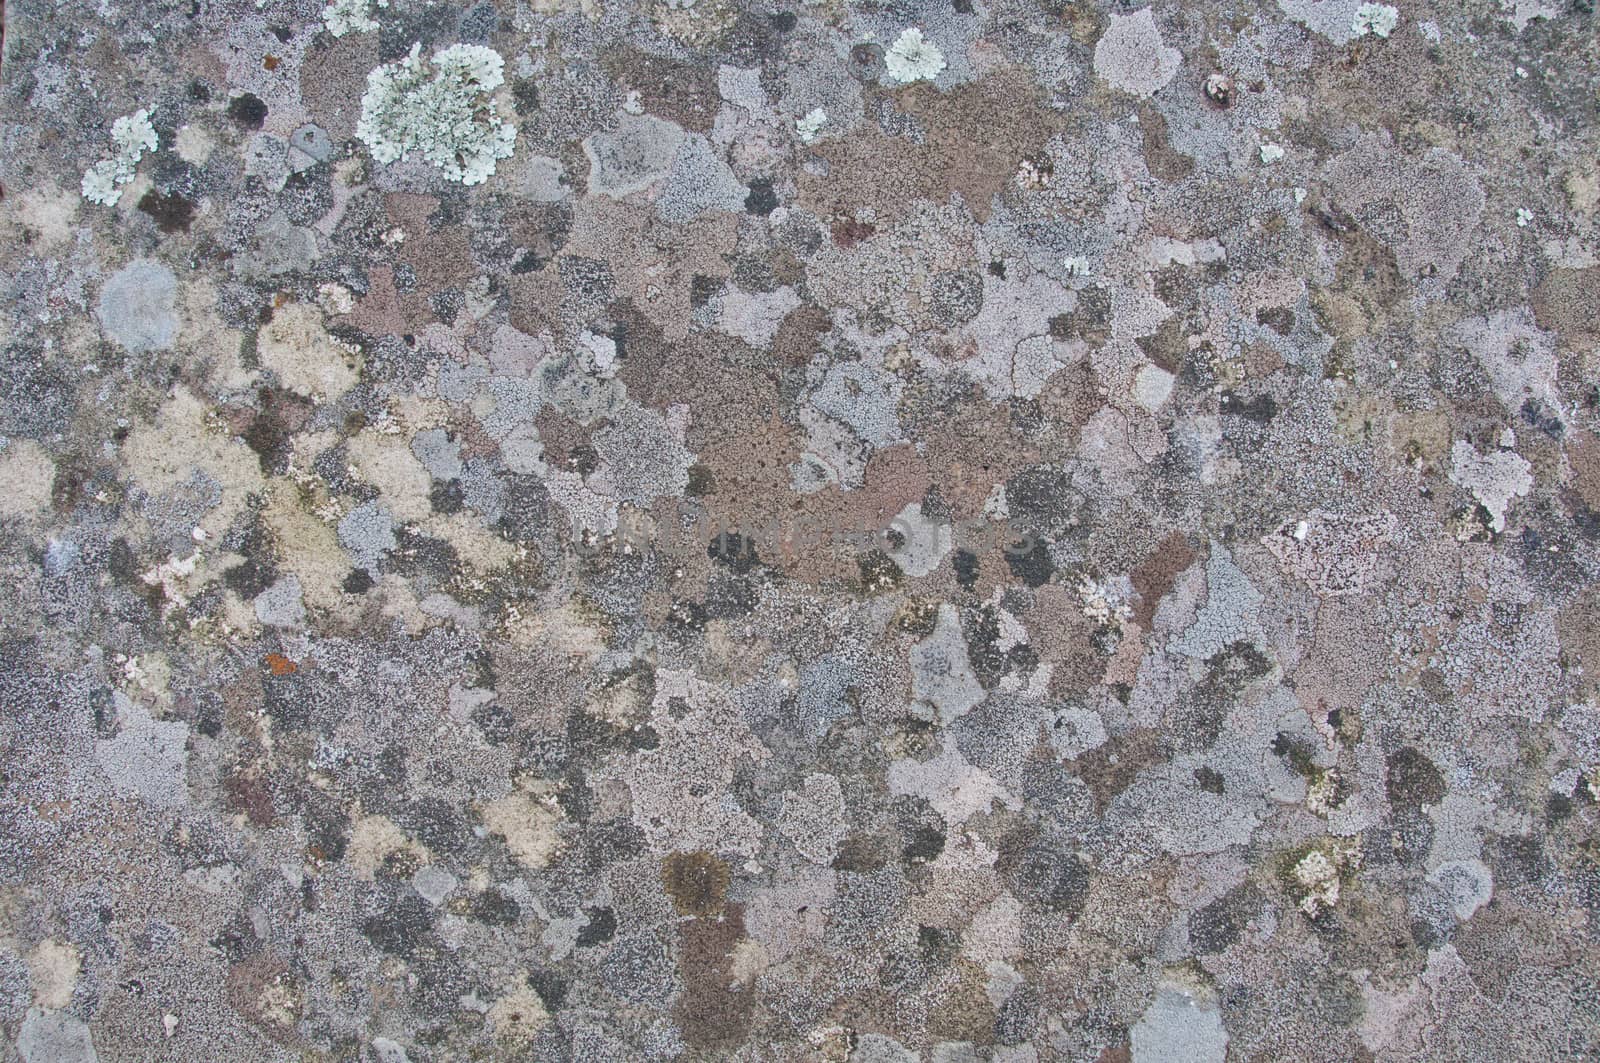 Abstract backgroud of random pattern grey granite stones by eyeofpaul